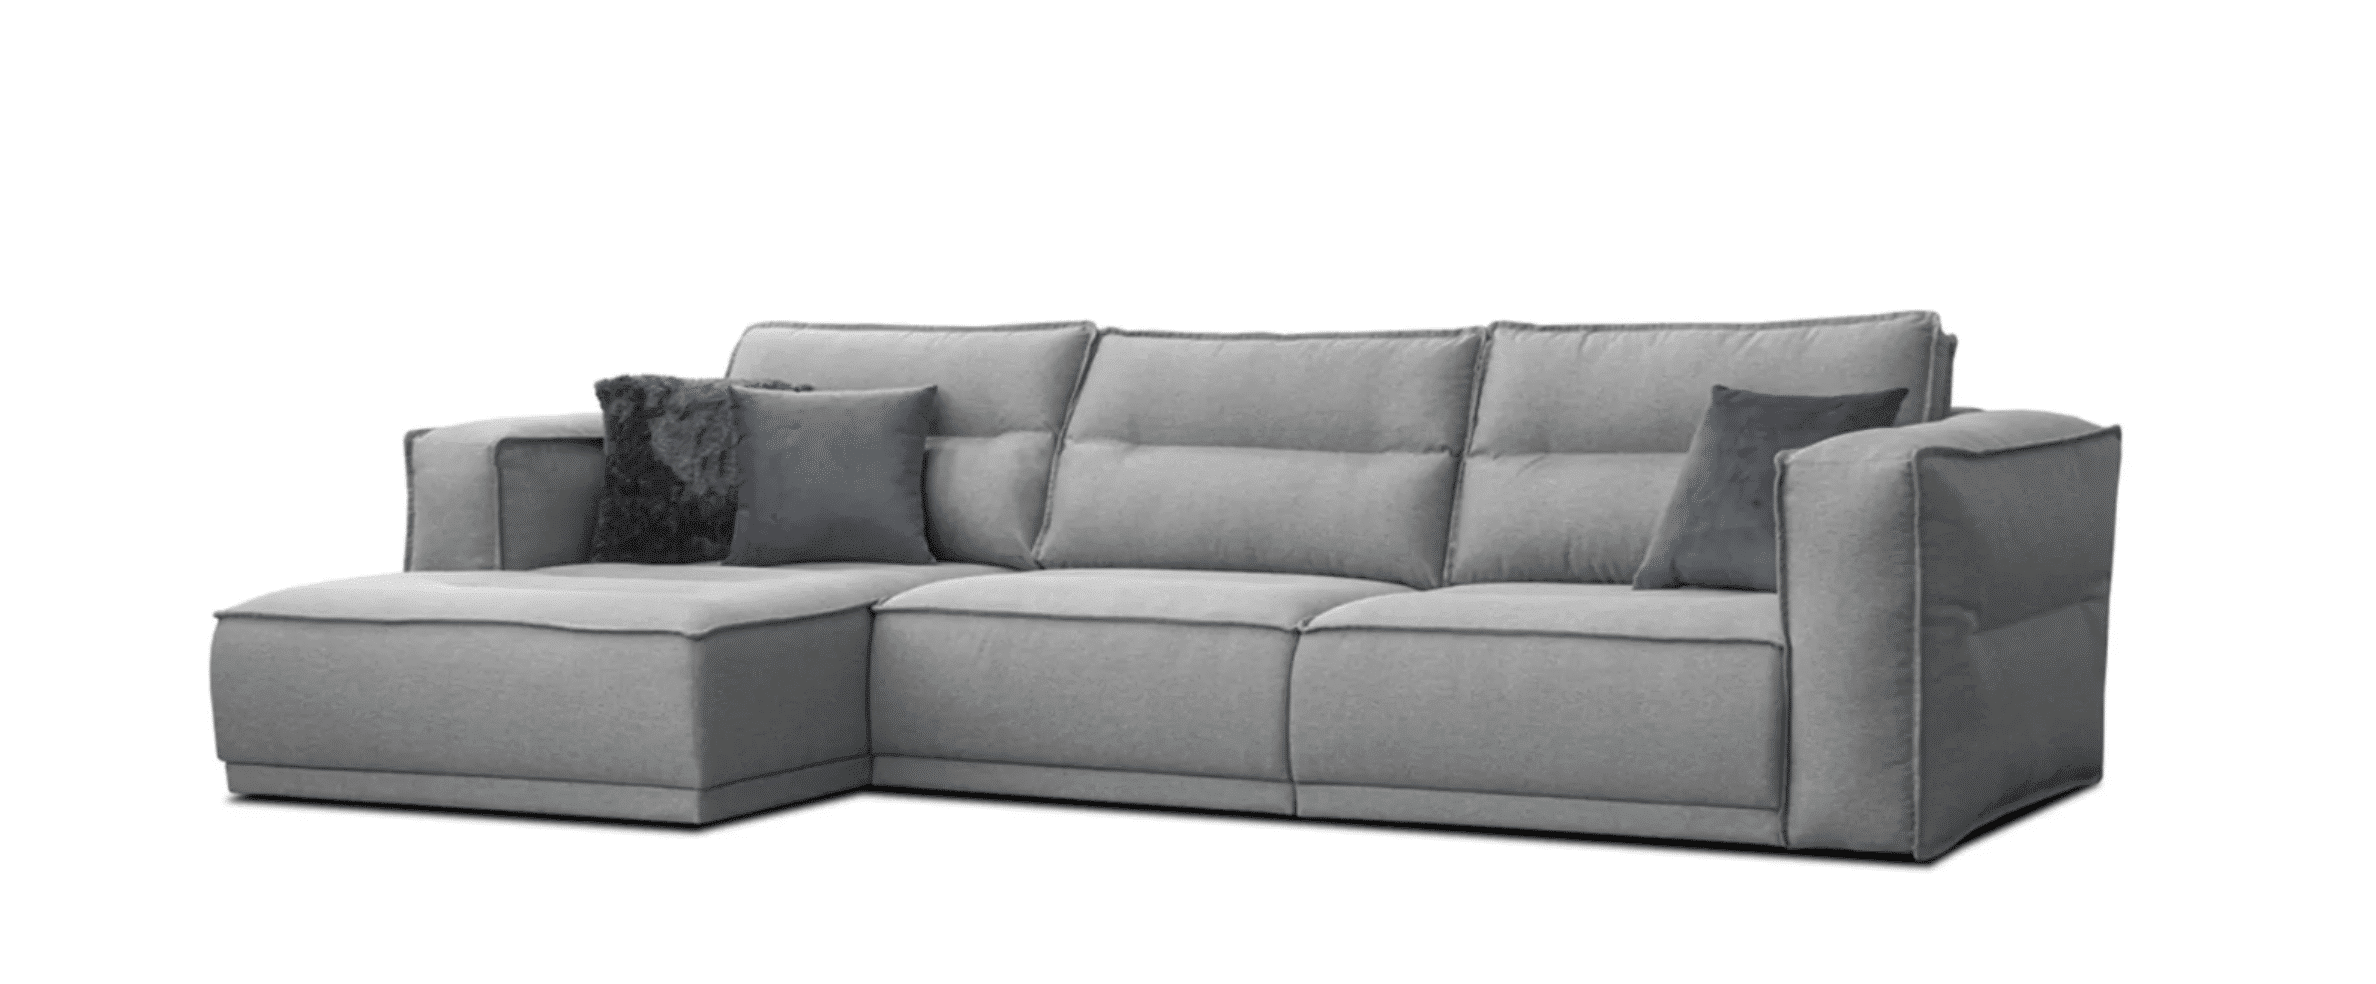 PANORAMA este o canapea modulară care se caracterizează prin moliciune și confort unic.